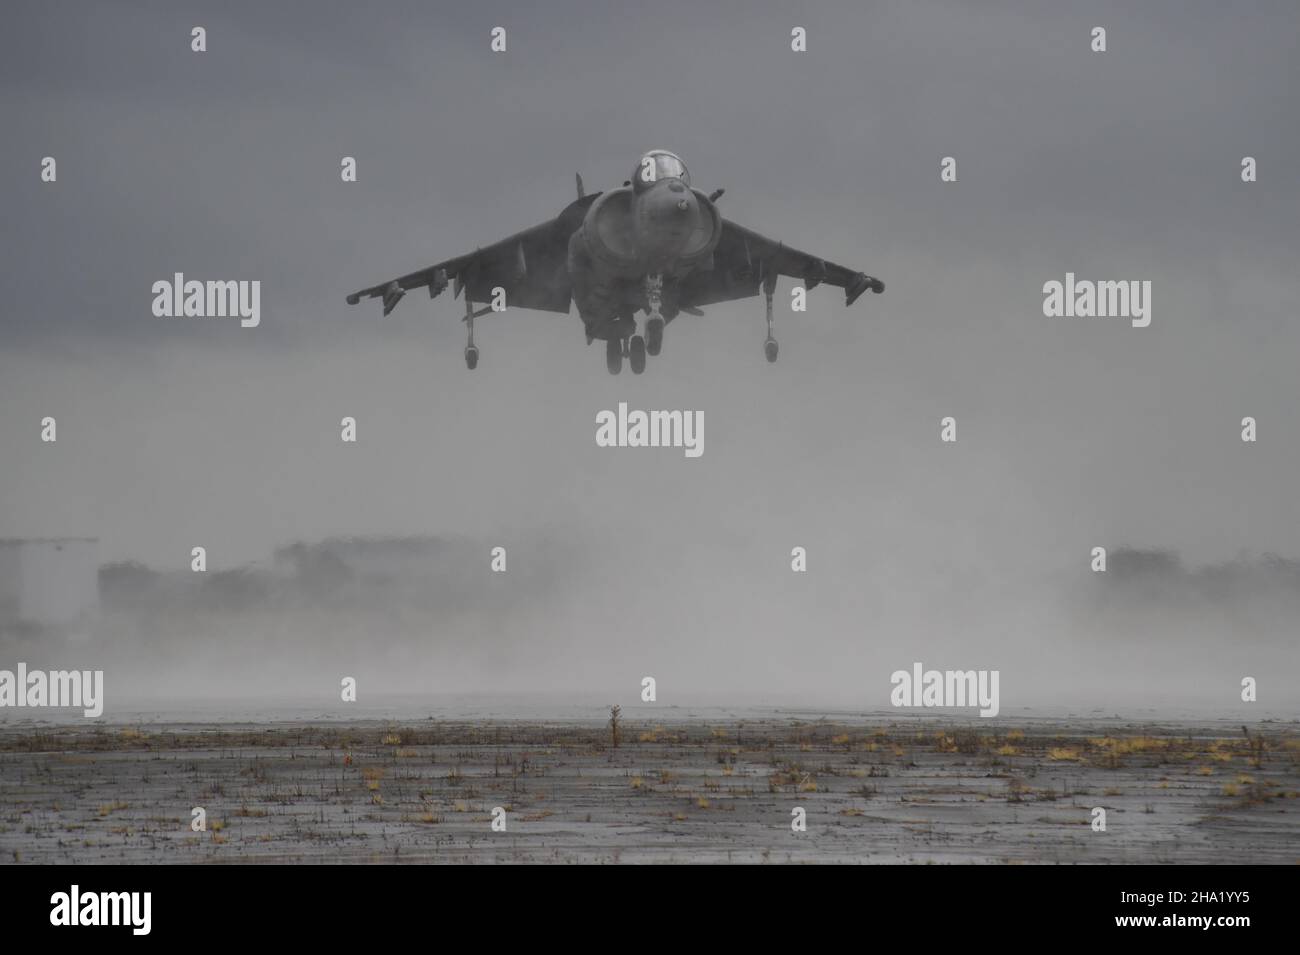 United States Marine Corps AV-8B Harrier II atterraggio nella nebbia (1 del 4) a MCAS Miramar, California. Foto Stock